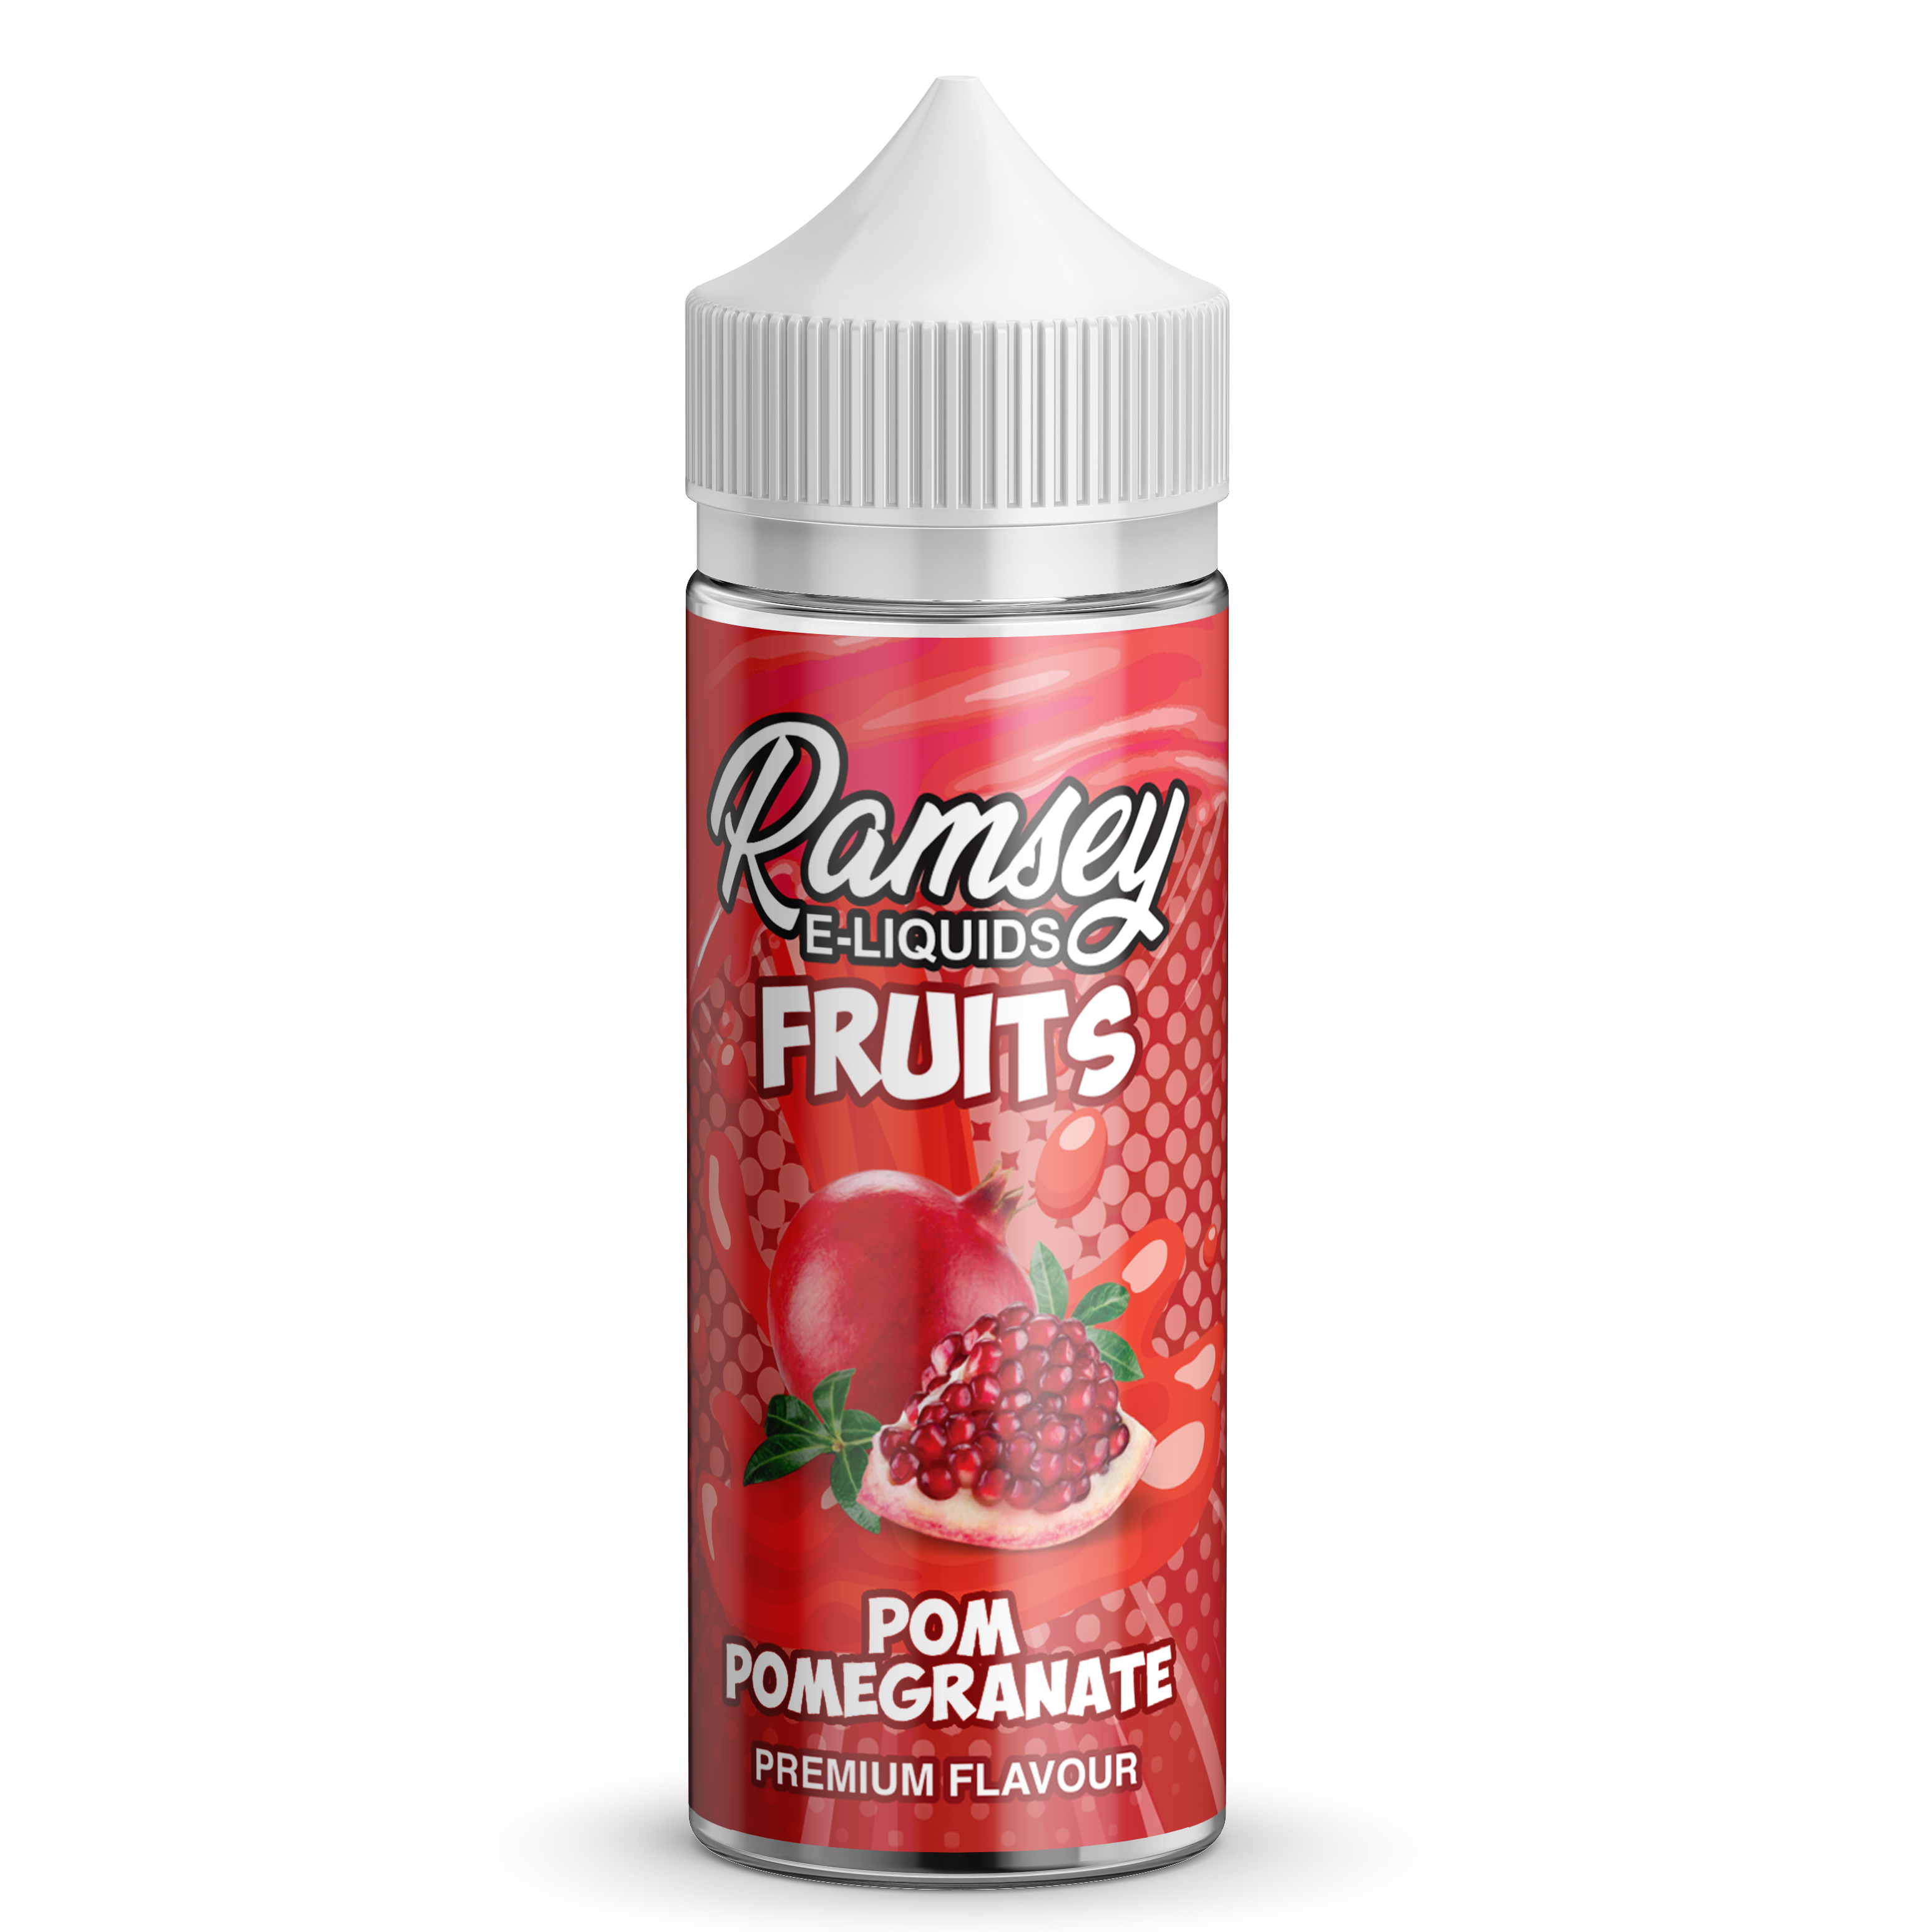 Ramsey E-Liquids Fruits Pom Pomegranate 0mg 100ml Shortfill E-Liquid